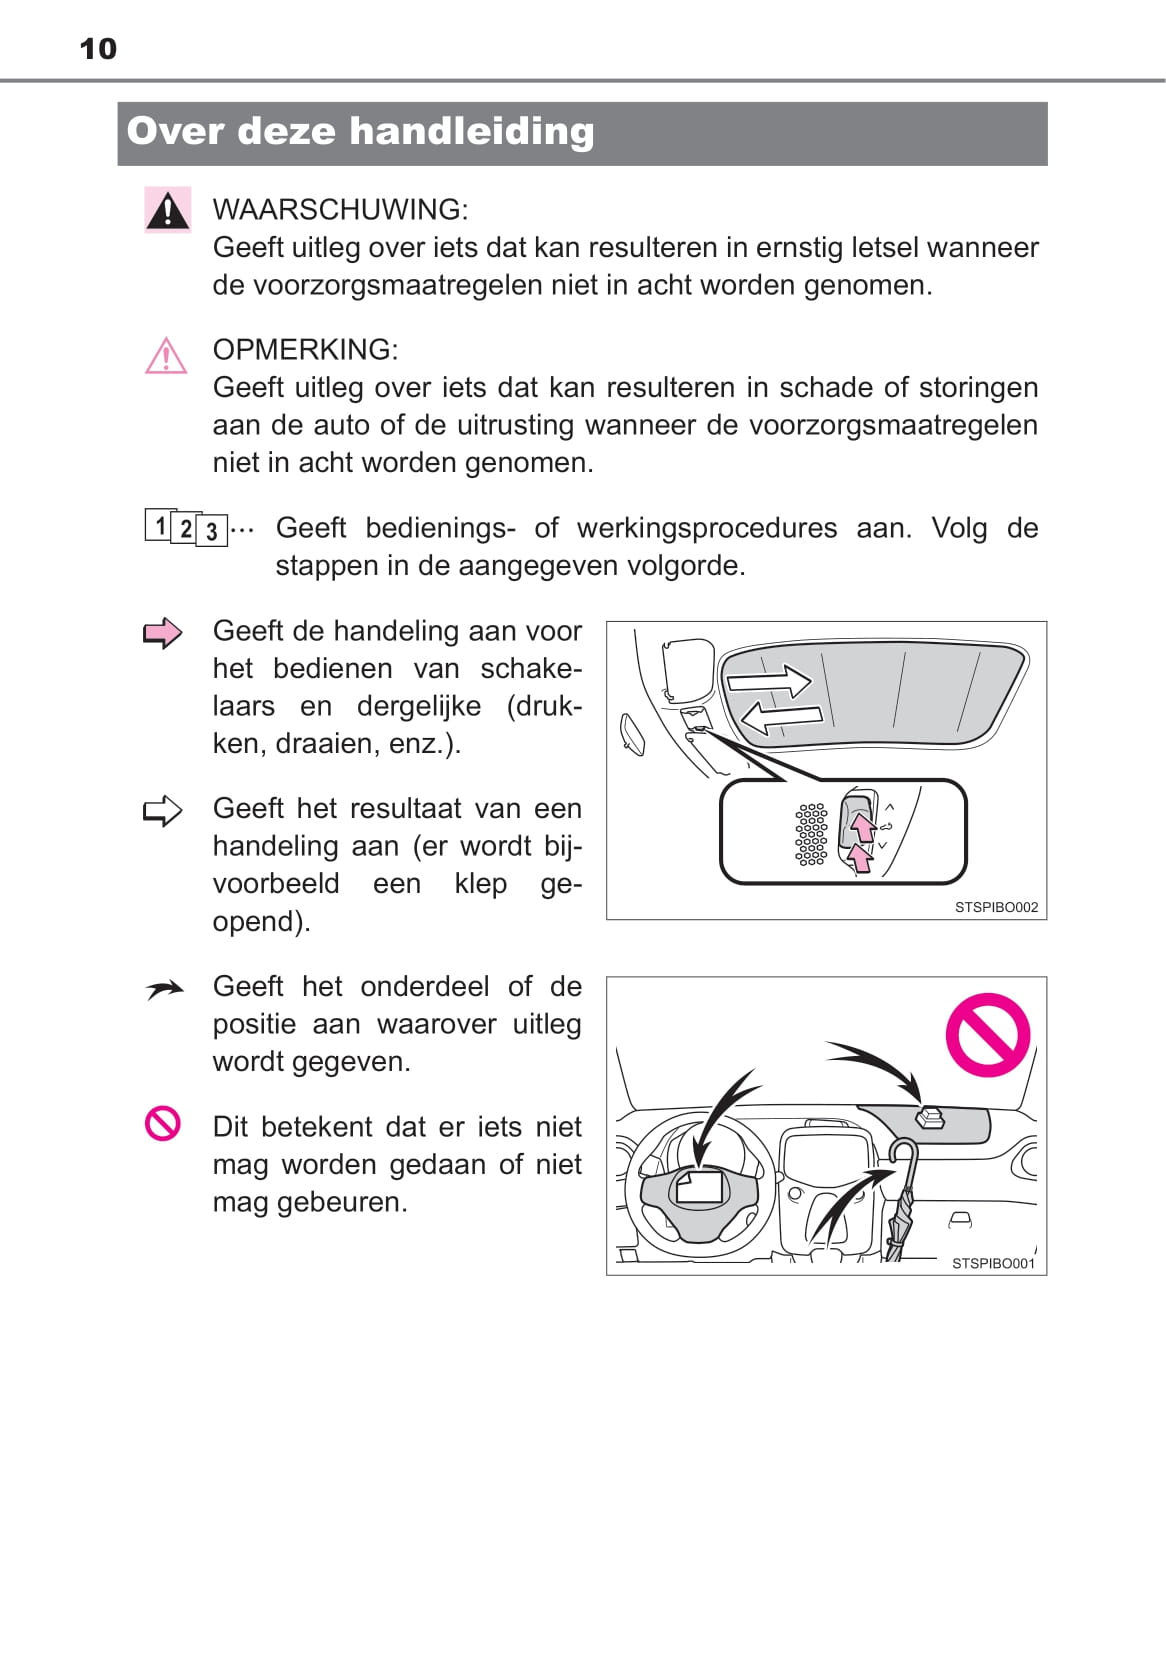 2019-2020 Toyota Aygo Bedienungsanleitung | Niederländisch